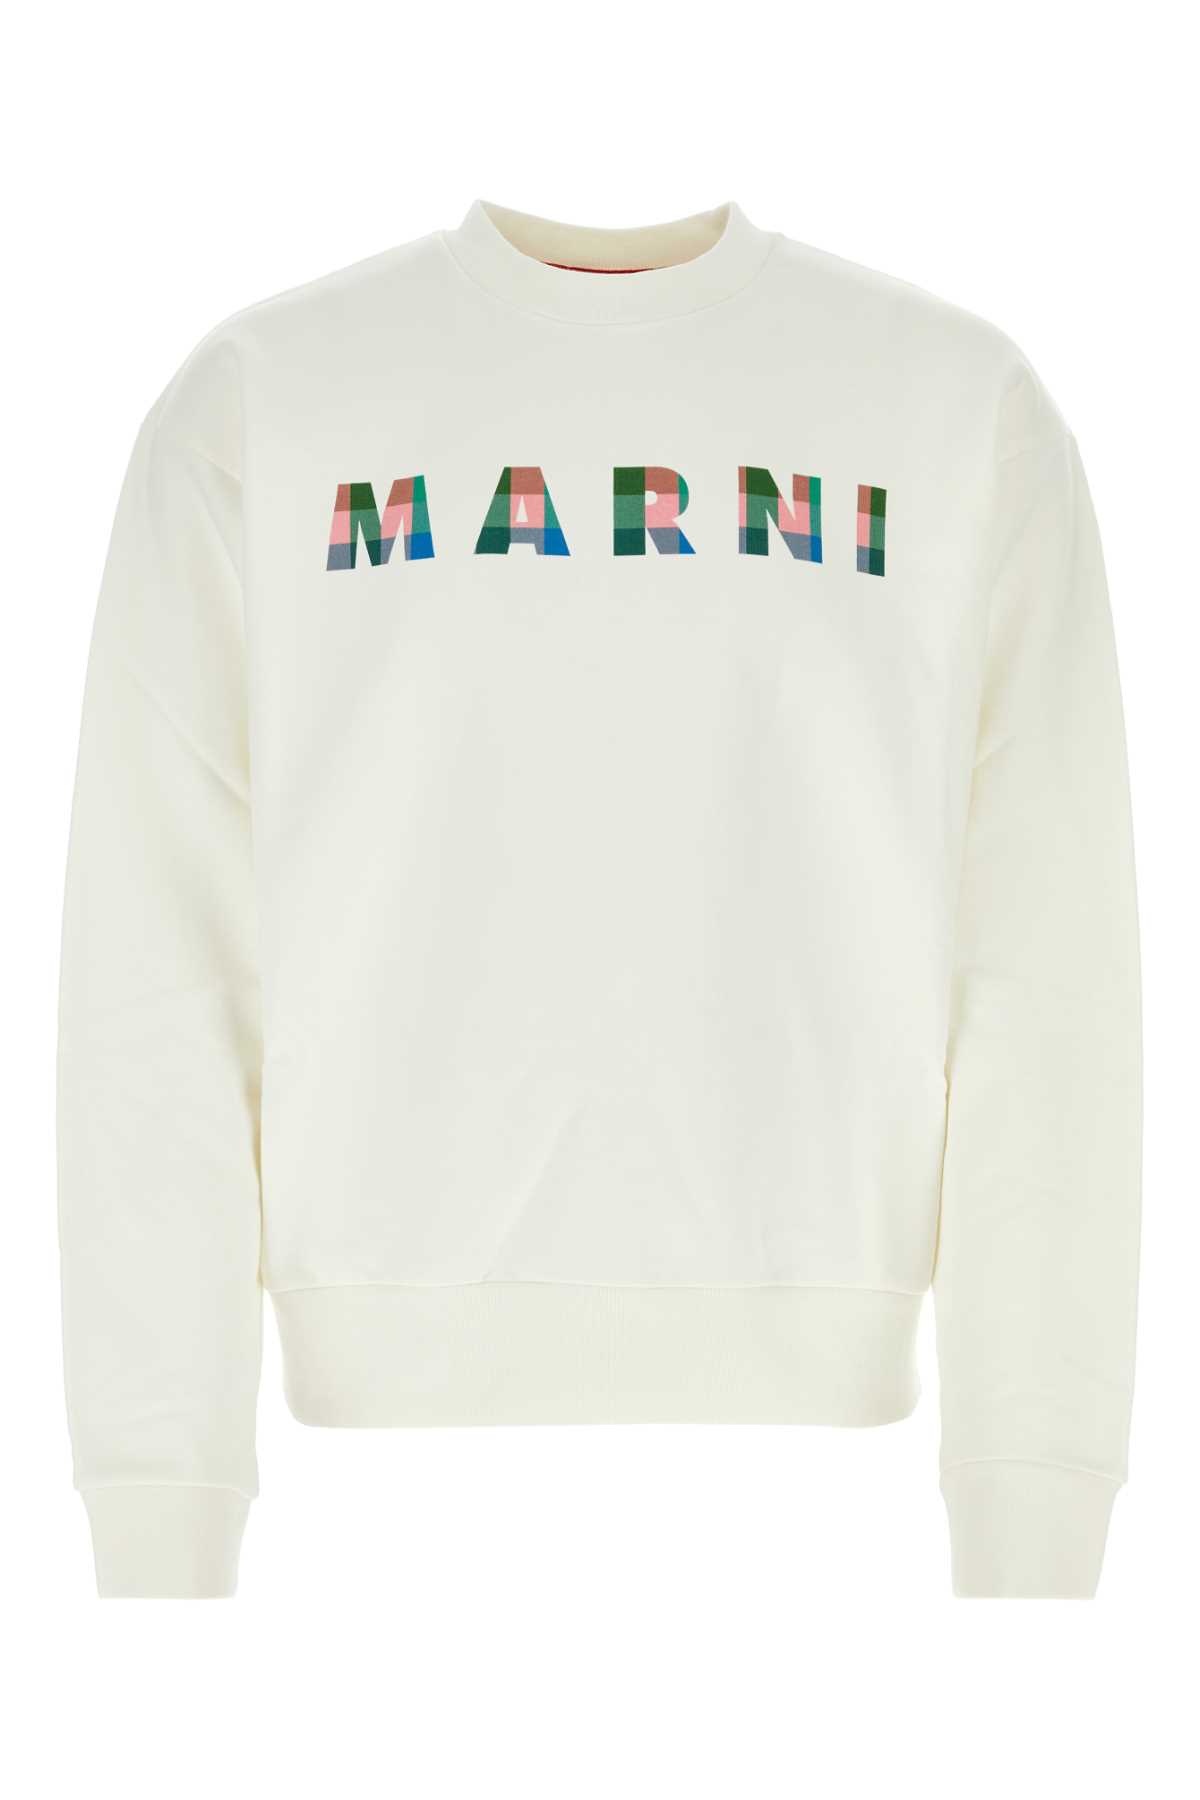 Marni White Cotton Sweatshirt In Naturalwhite